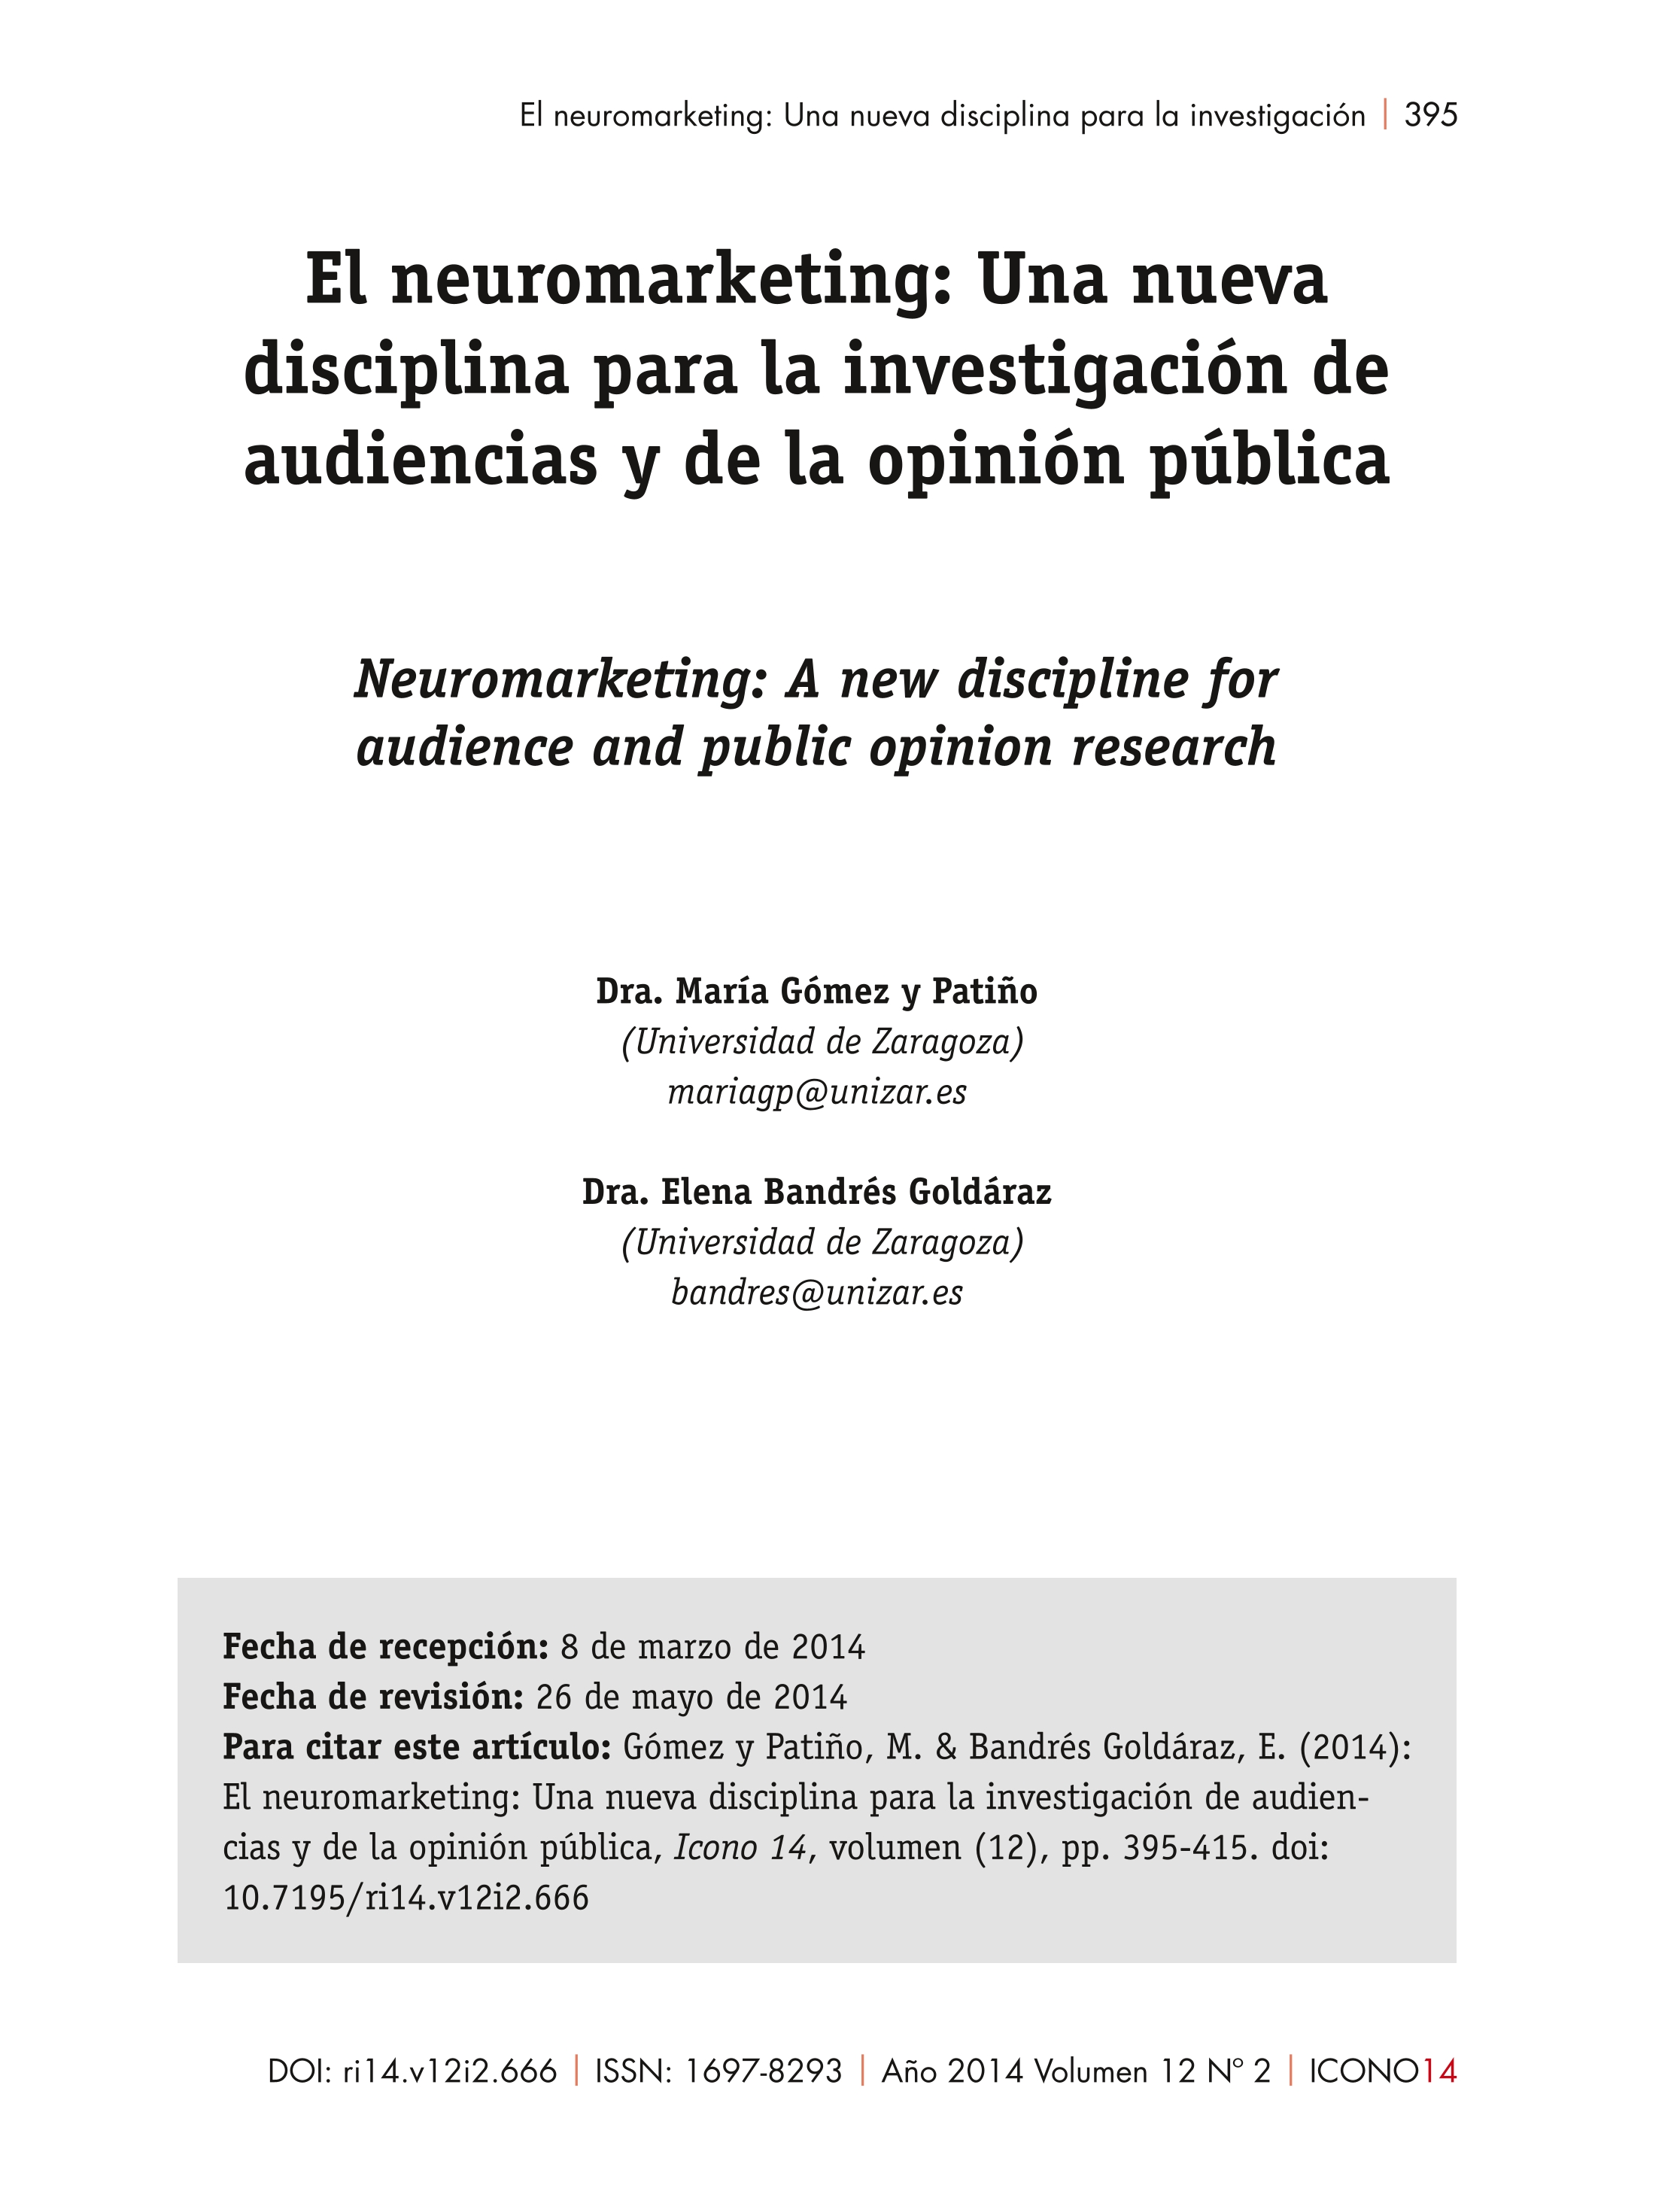 El neuromarketing: Una nueva disciplina para la investigación de audien¬cias y de la opinión pública